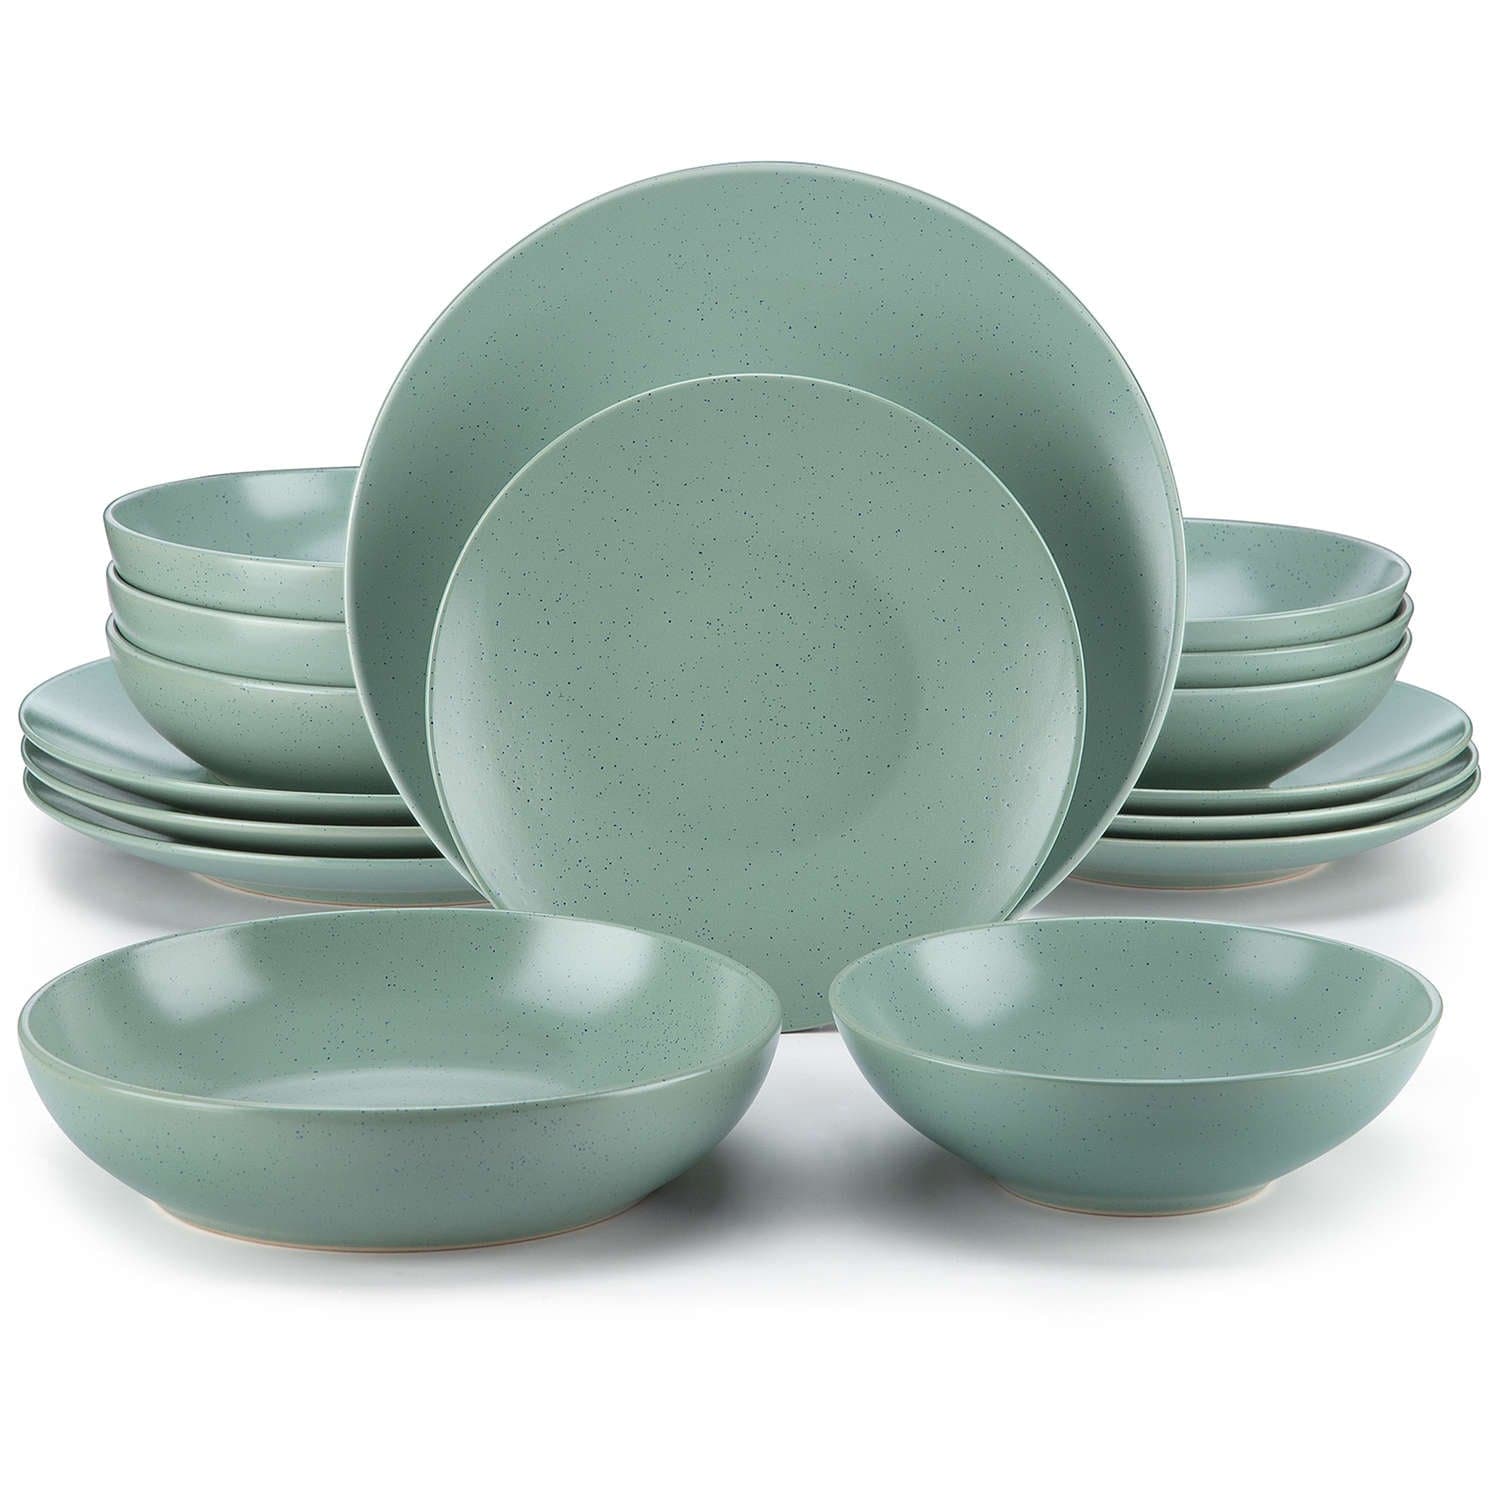 vancasso Stern 16-Piece Green Stoneware Dinnerware Set (Service